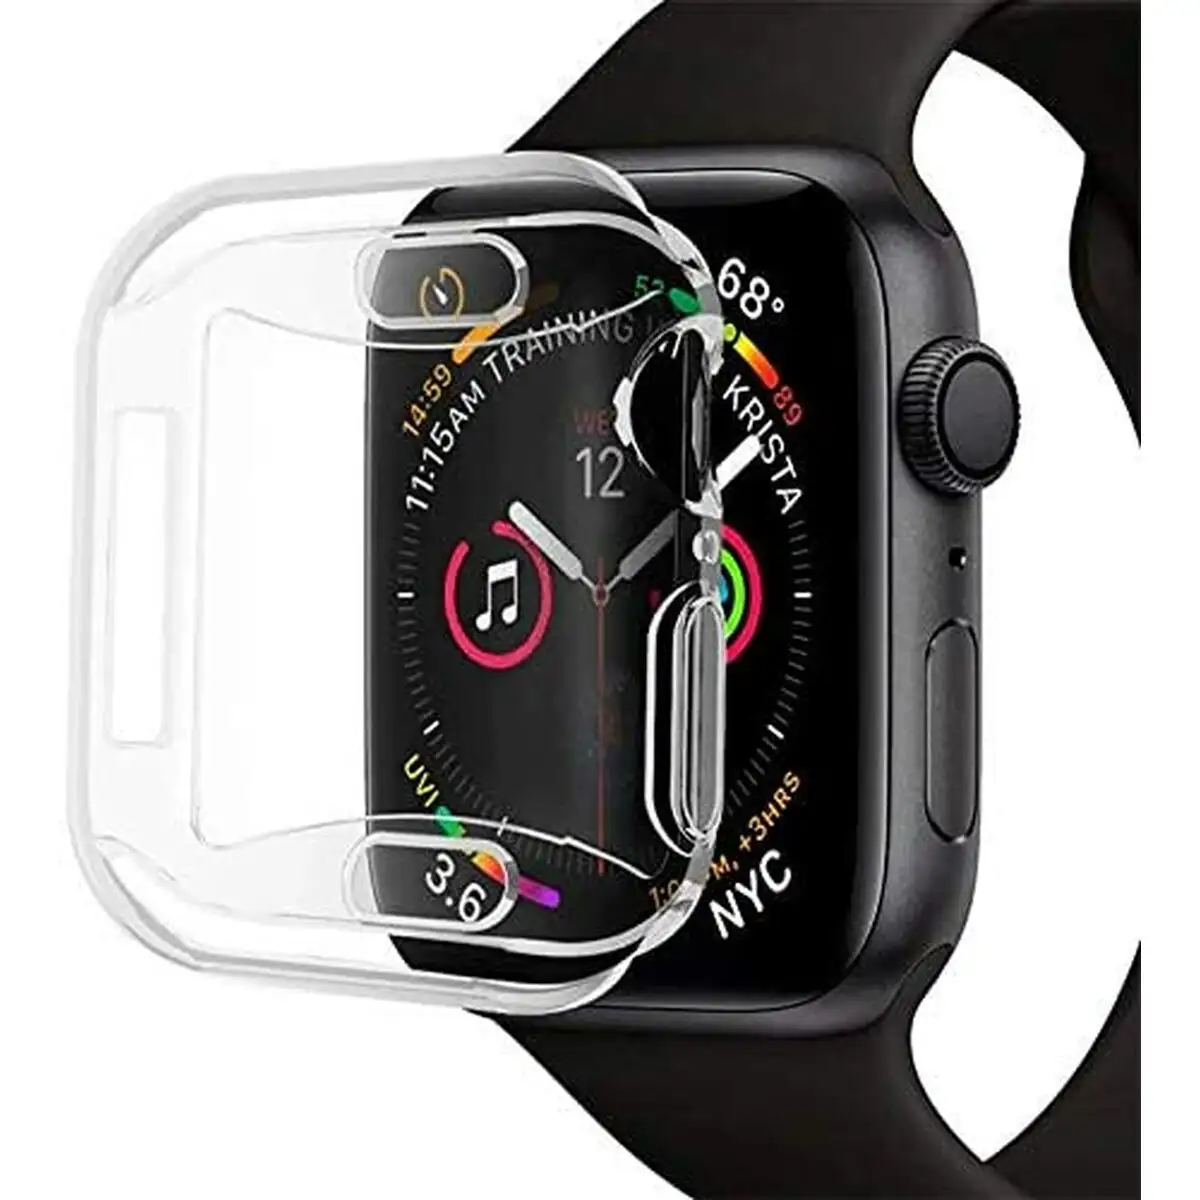 Protection pour ecran cool apple watch series 4 5 6 se_7260. DIAYTAR SENEGAL - Là où Chaque Clic Compte. Parcourez notre boutique en ligne et laissez-vous guider vers des trouvailles uniques qui enrichiront votre quotidien.